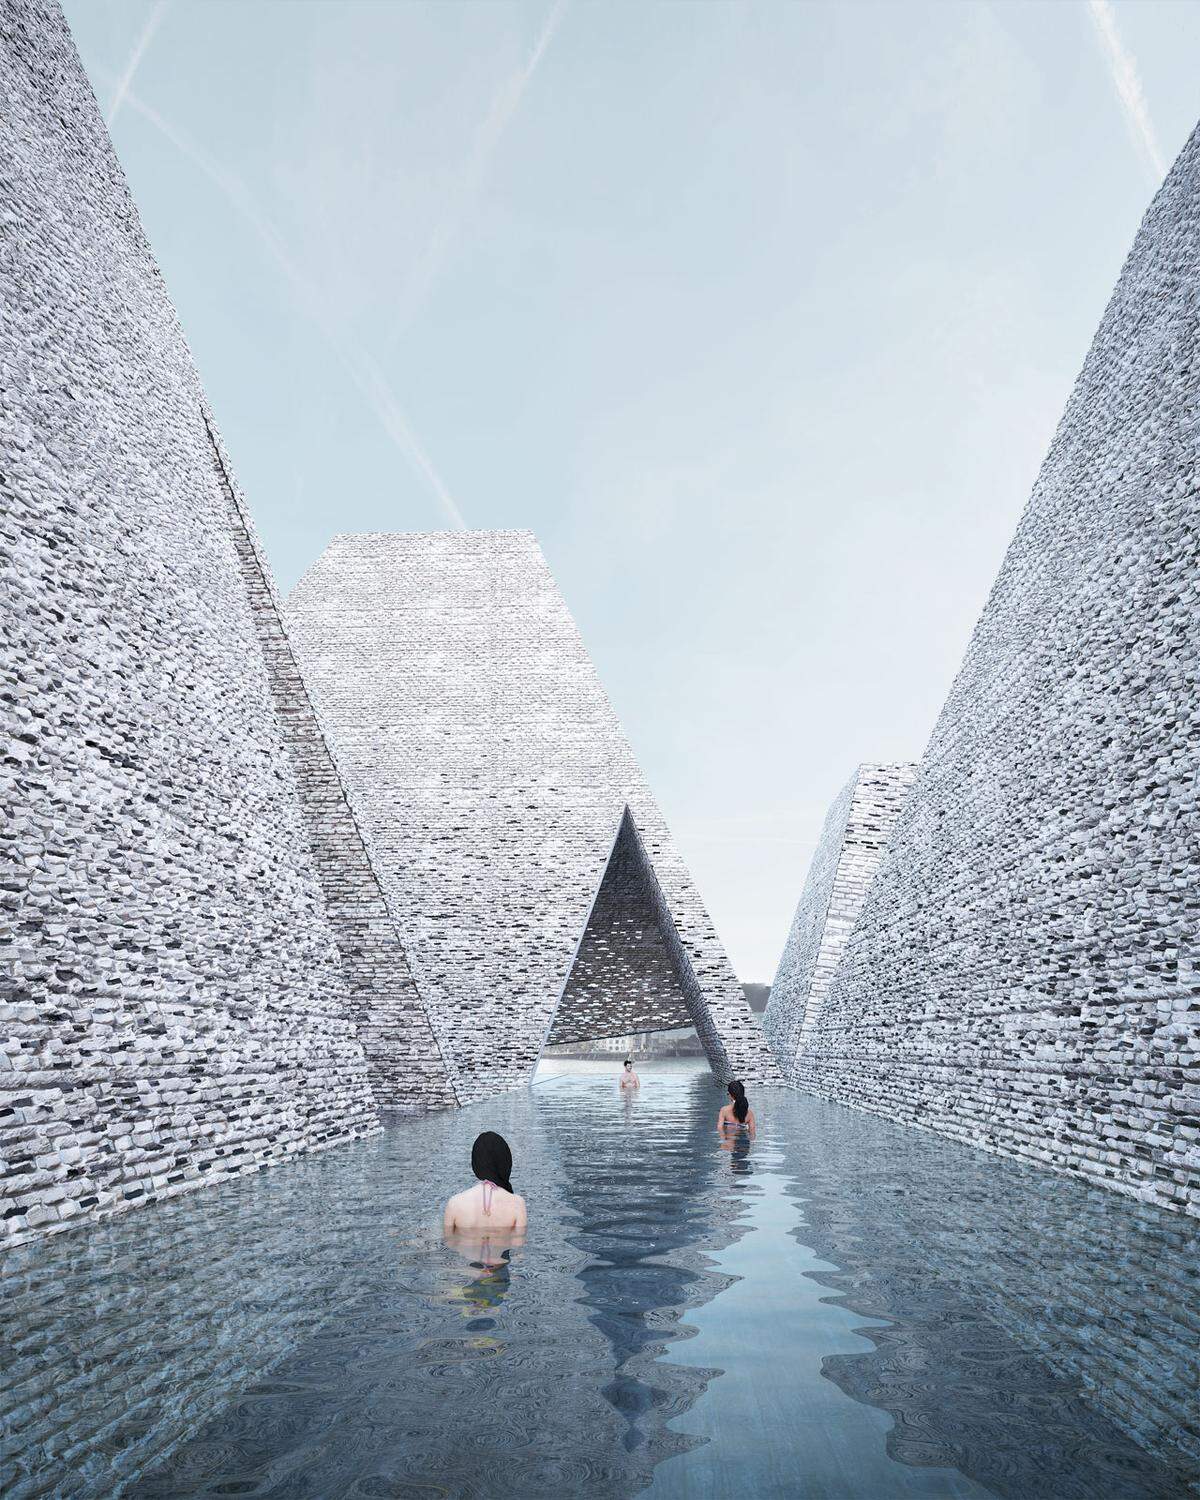 Gewaltige Pyramiden und gläserne Tunnel: Das japanische Architekturbüro Kengo Kuma and Associates hat den Zuschlag für das neue Waterfront Cultural Center inklusive Schwimmbad in Kopenhagen erhalten.